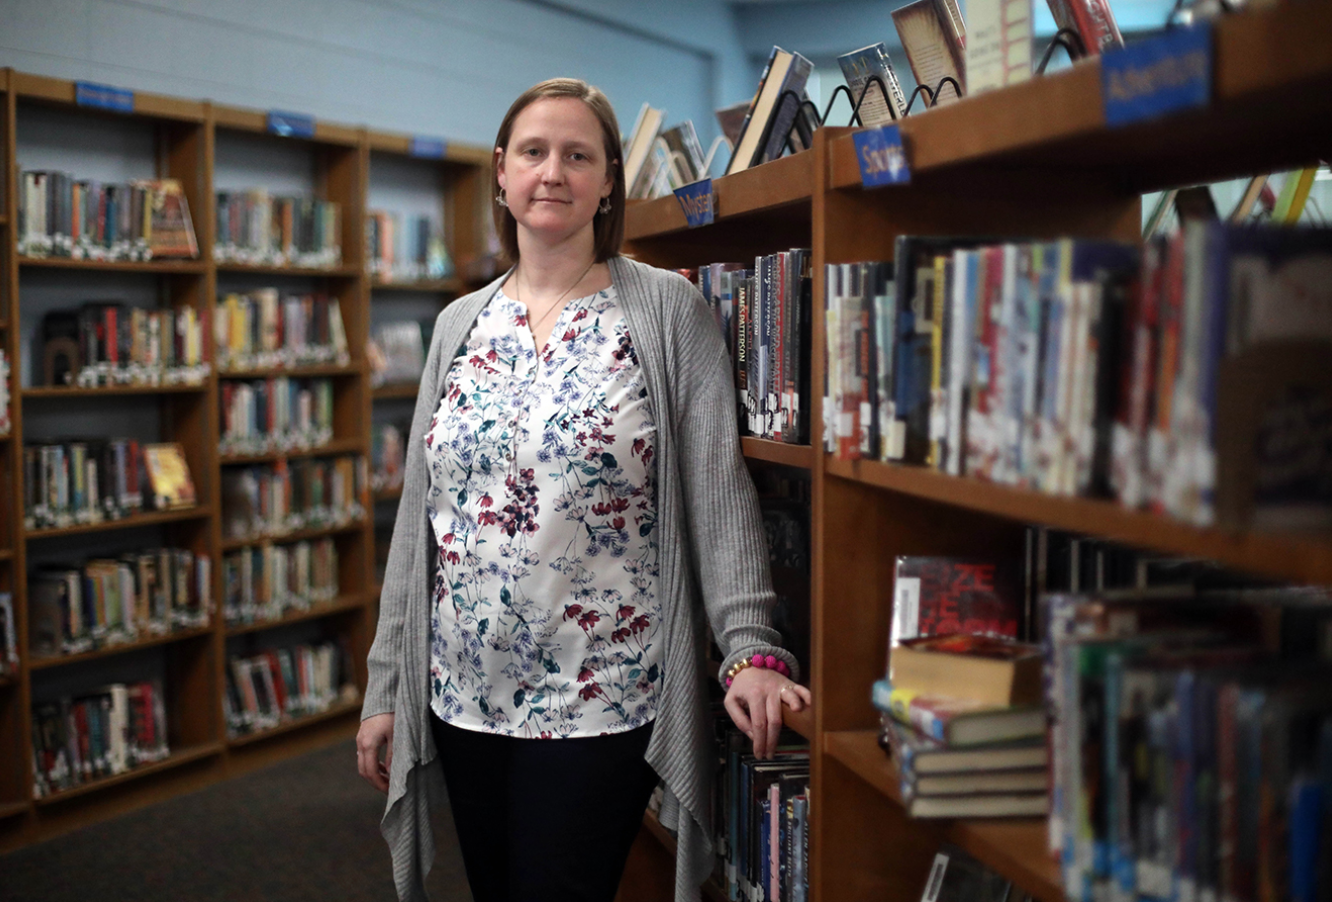 School librarian Amanda Brasfield